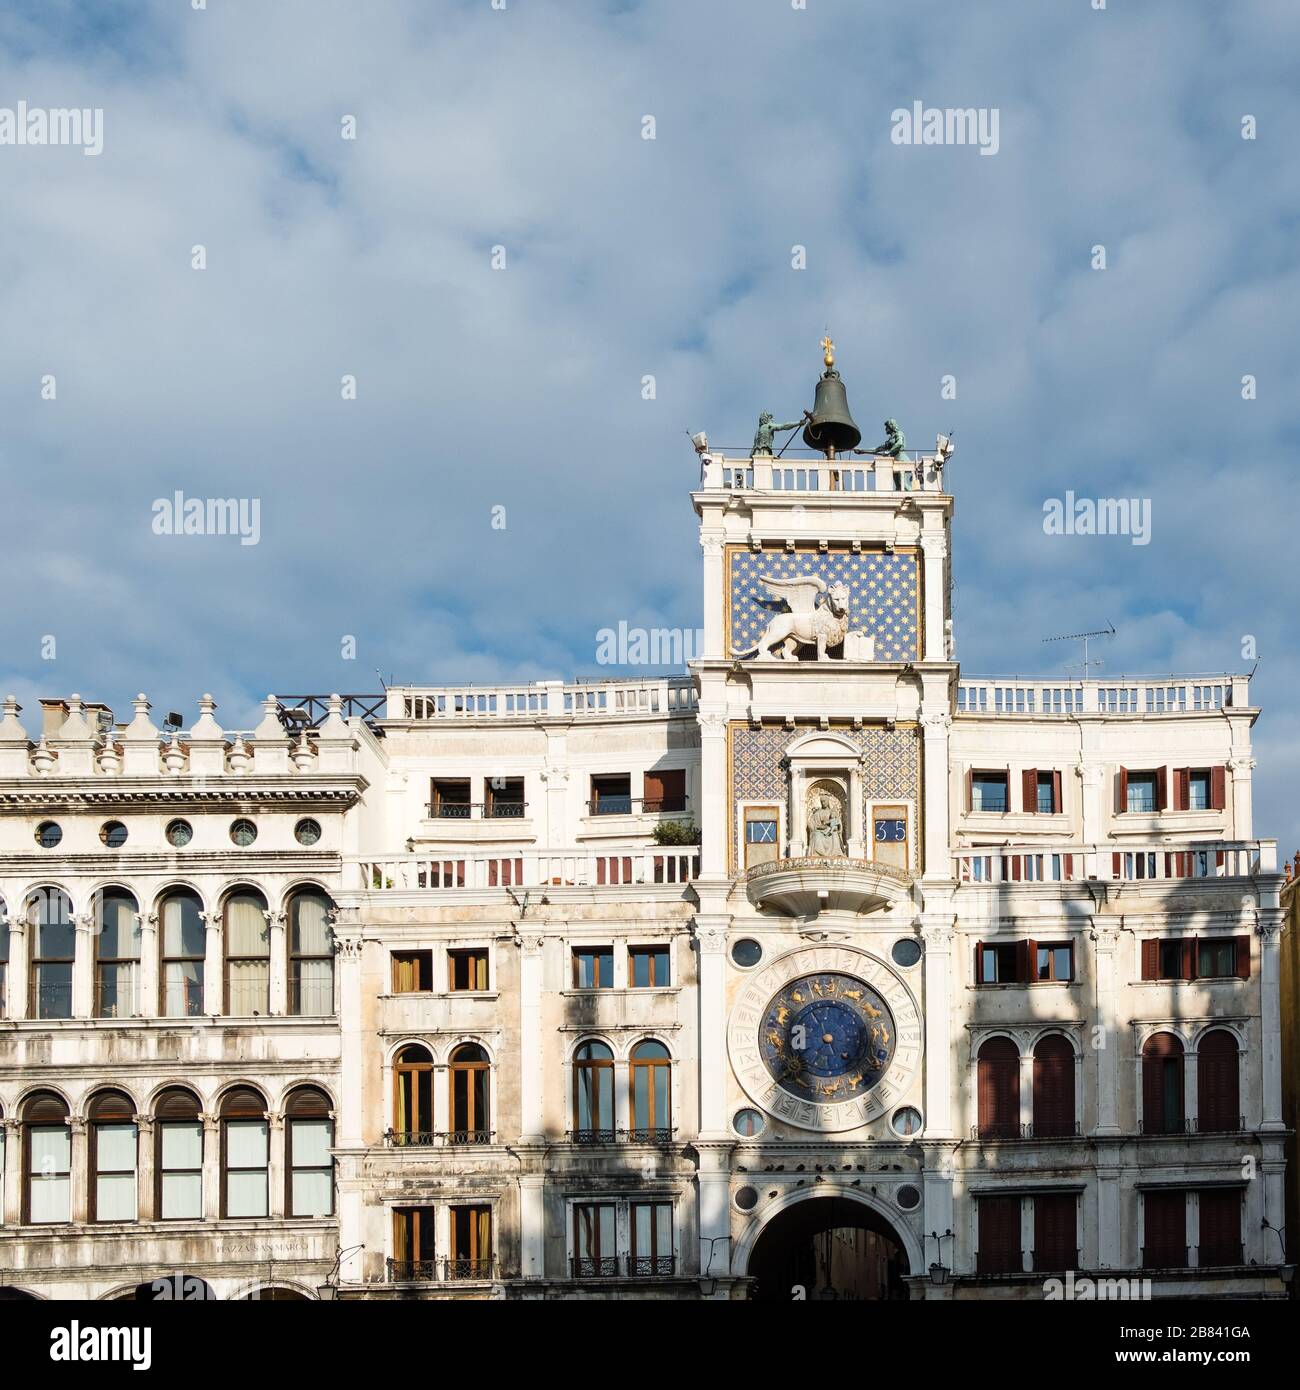 Torre dell' Orologio - l'horloge astronomique mécanique de Venise surplombe la place Saint-Marc. Cloche sur le dessus frappé par des statues en mouvement Banque D'Images